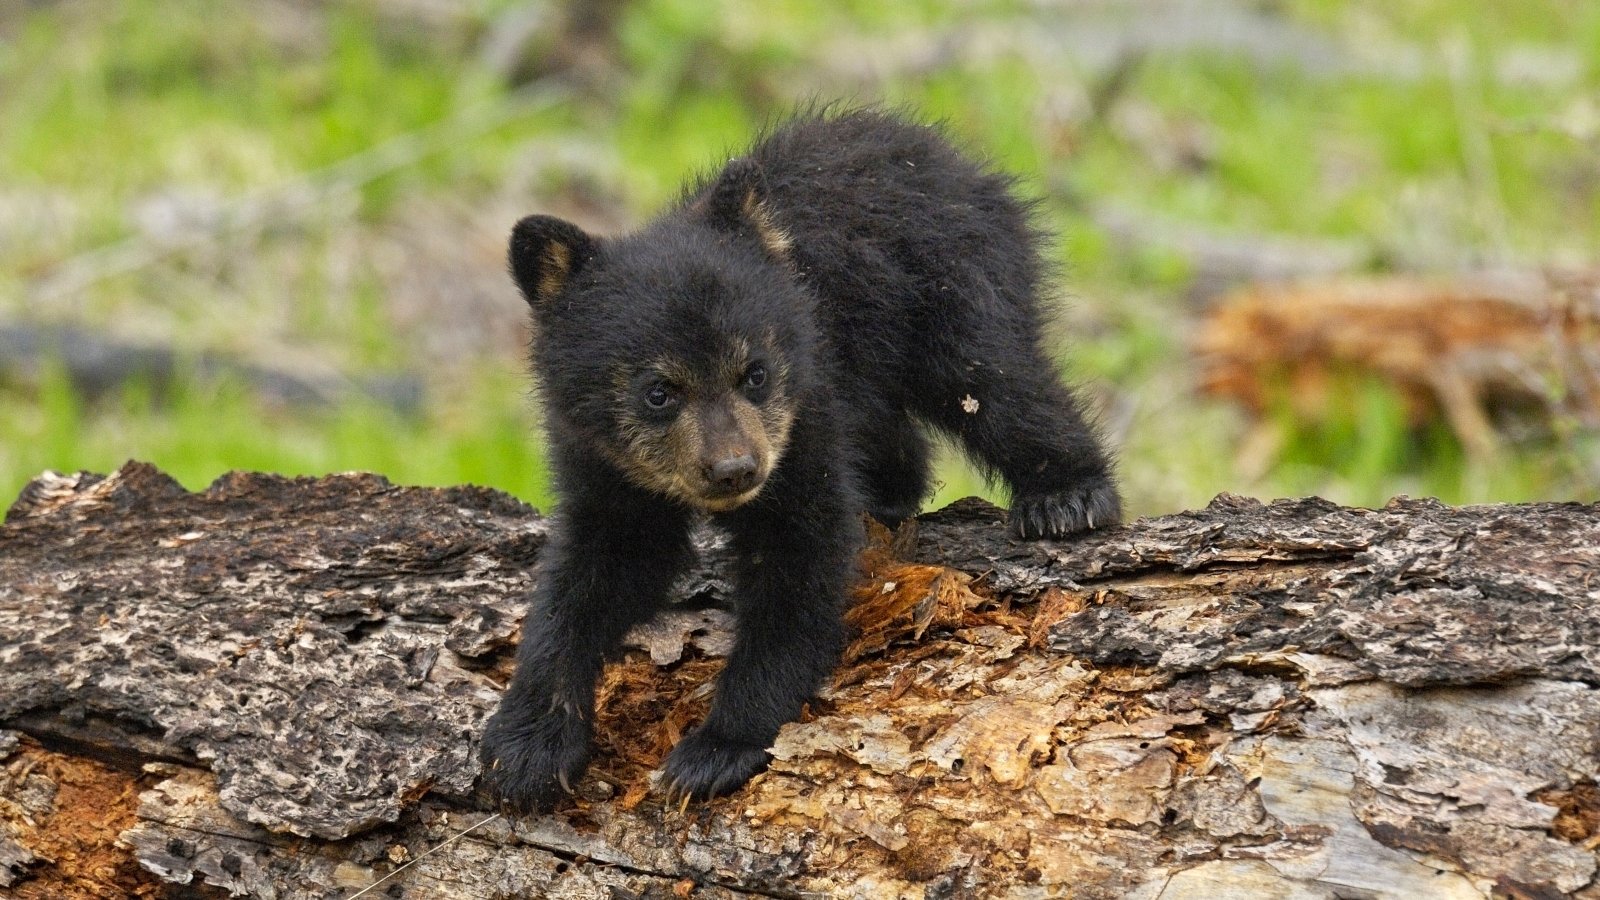 A black bear cub clawing at a dead tree